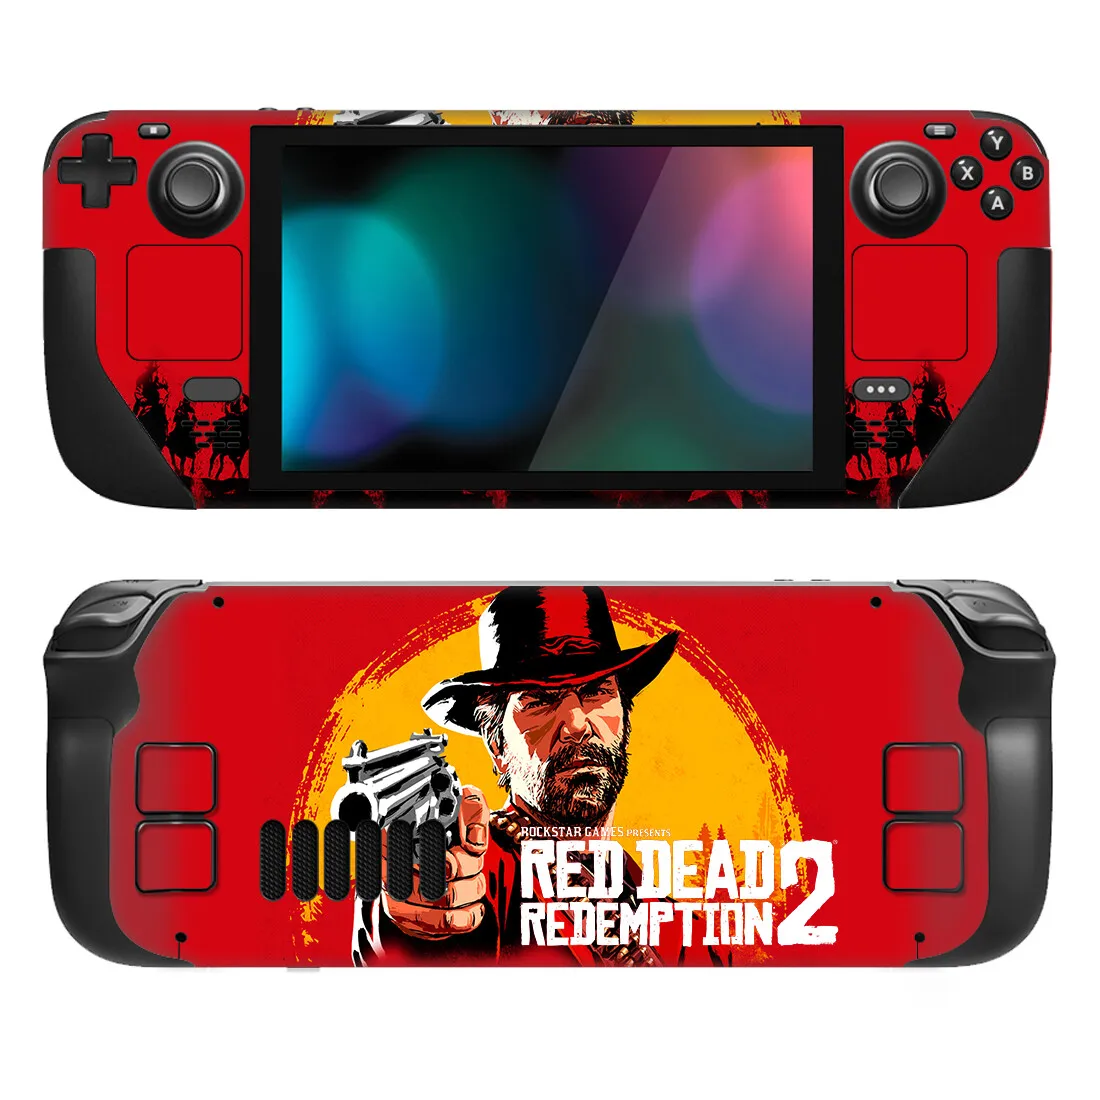 

Наклейка для консоли Red Dead Style Xbox Series X, наклейка для консоли и 2 контроллера, стиль 1